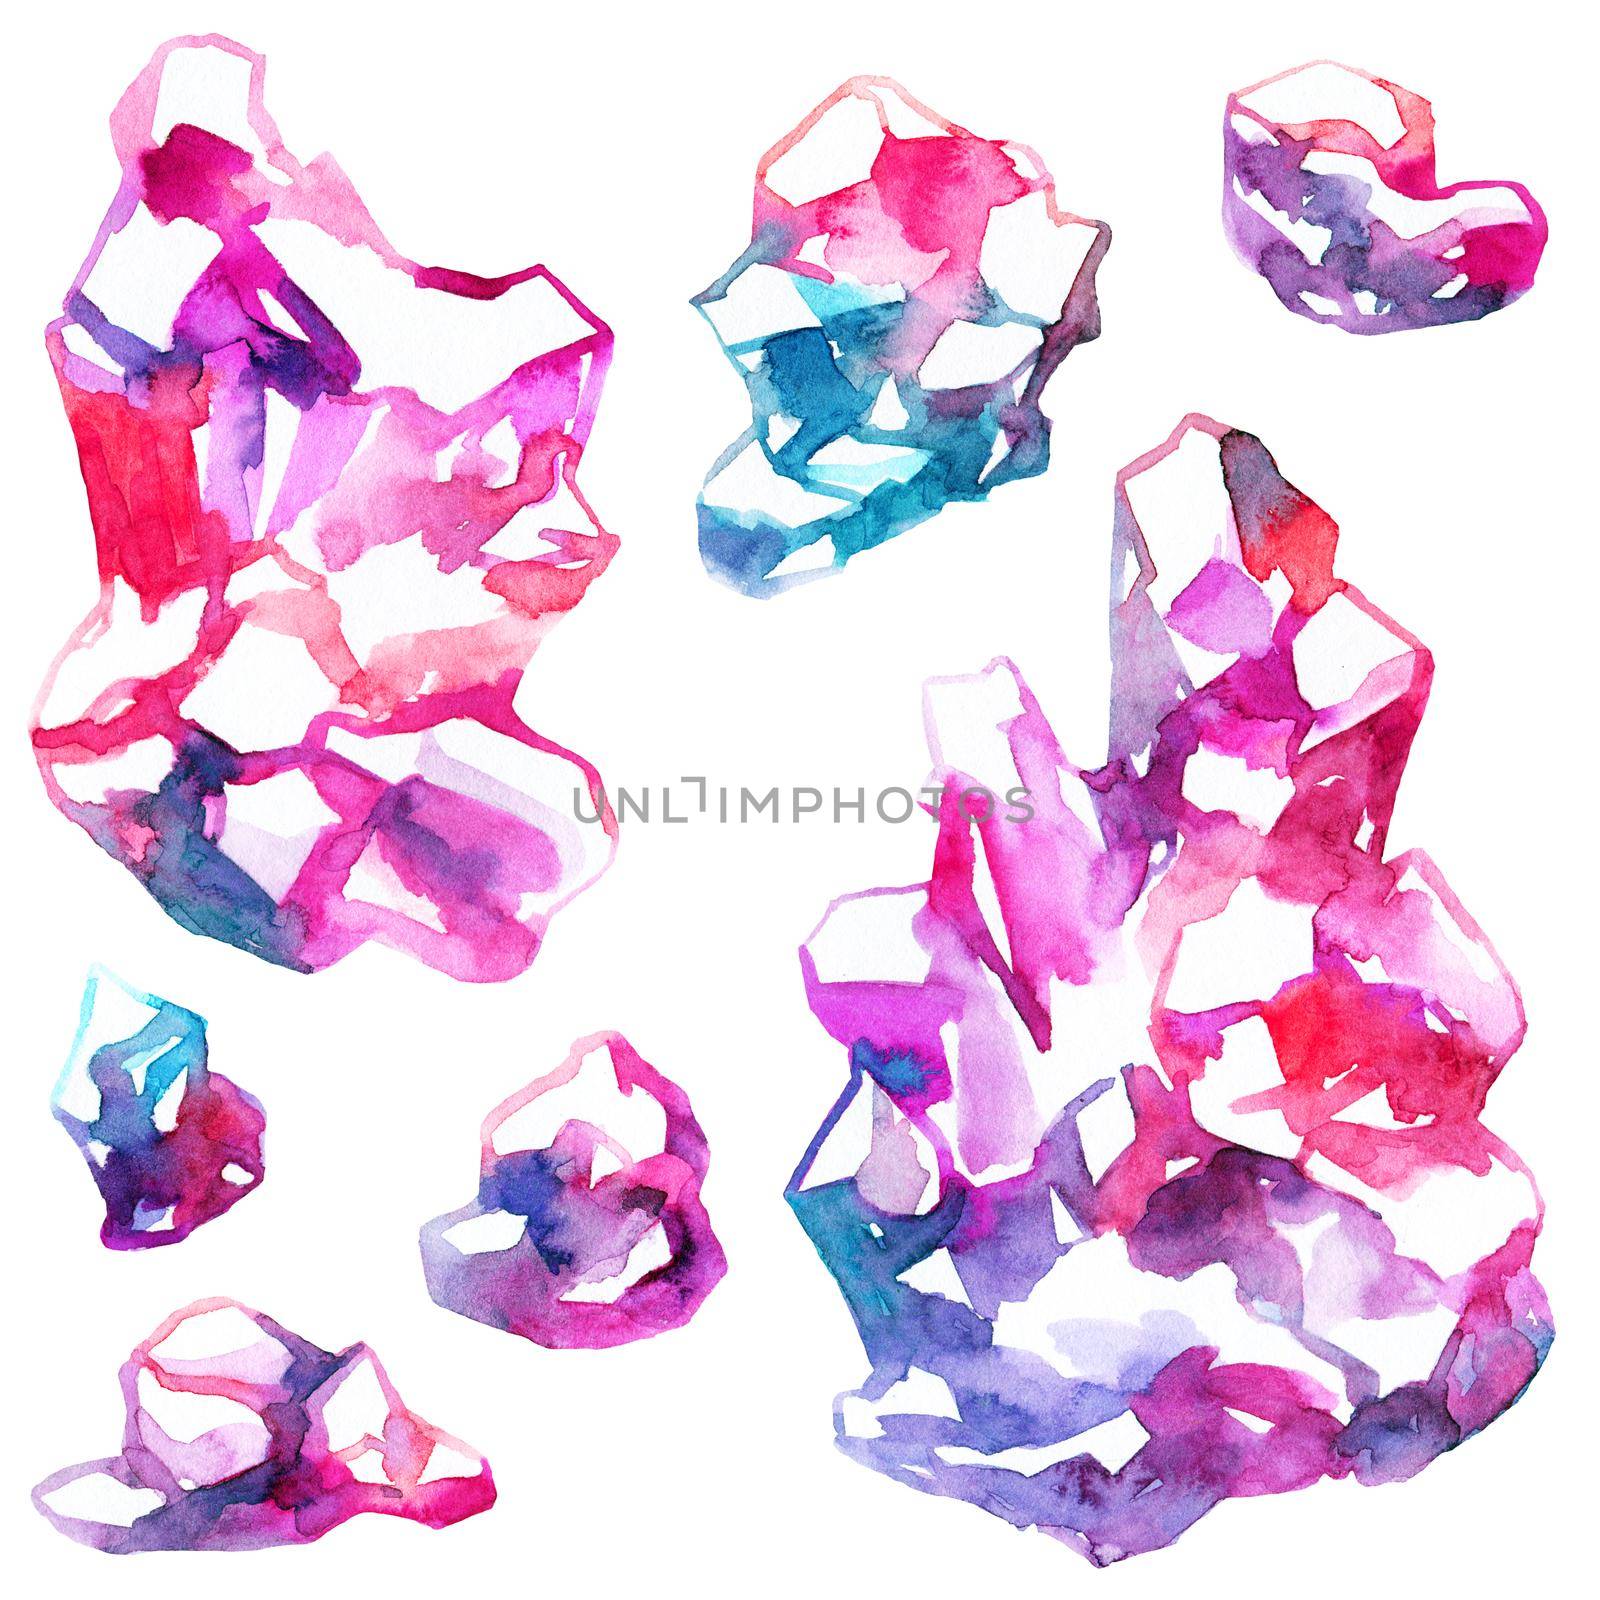 Watercolor crystals by Olatarakanova